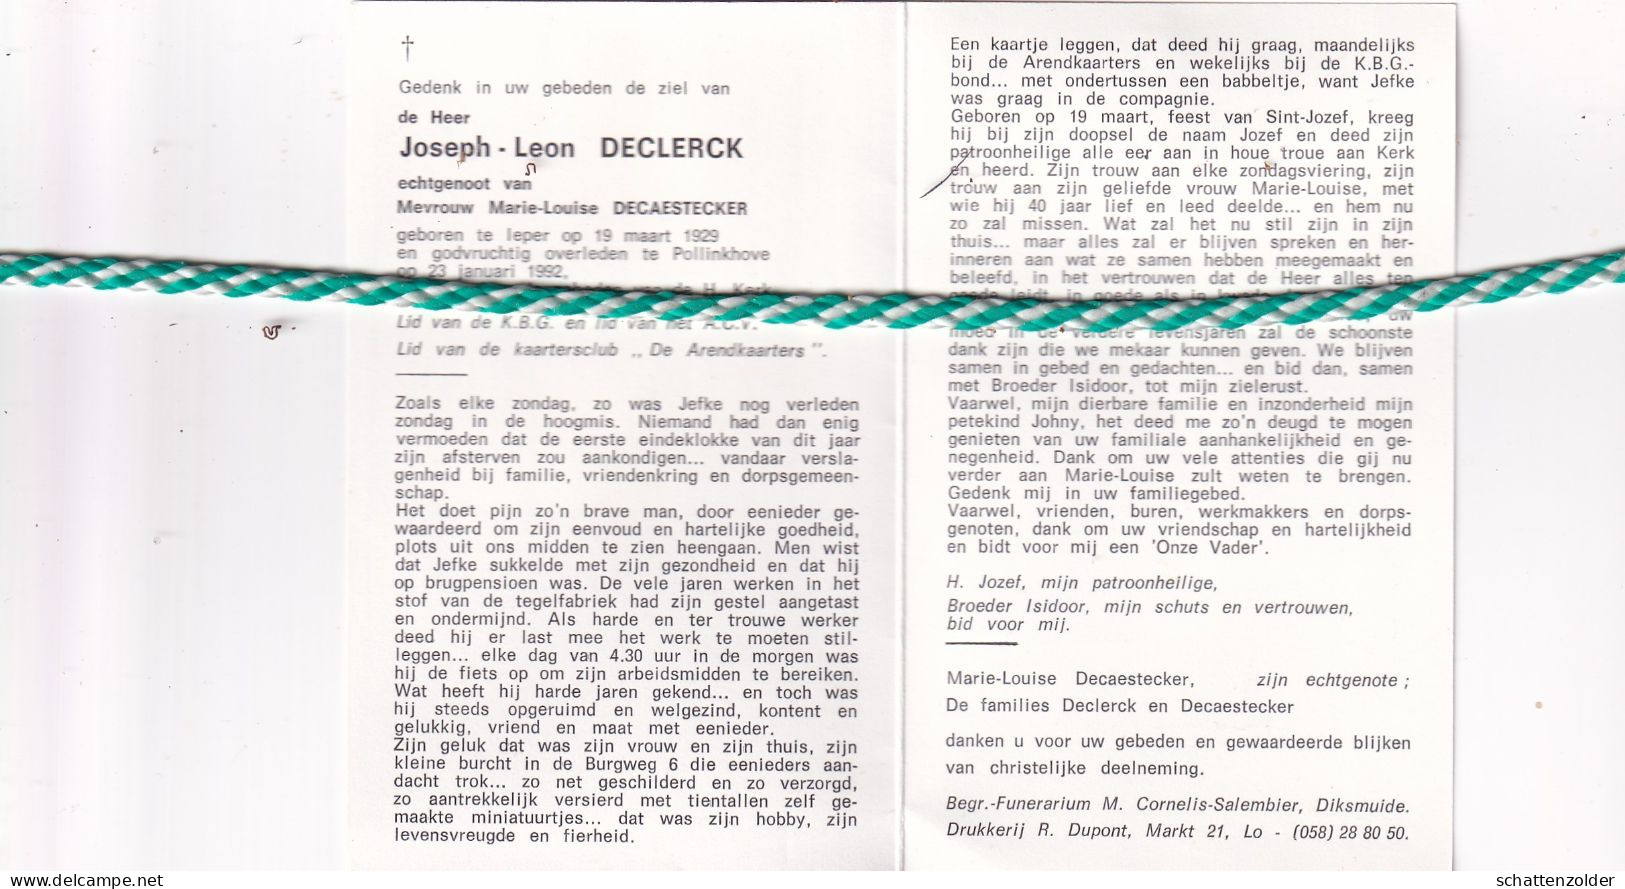 Joseph Leon Declerck-Decaestecker, Ieper 1929, Pollinkhove 1992 - Overlijden